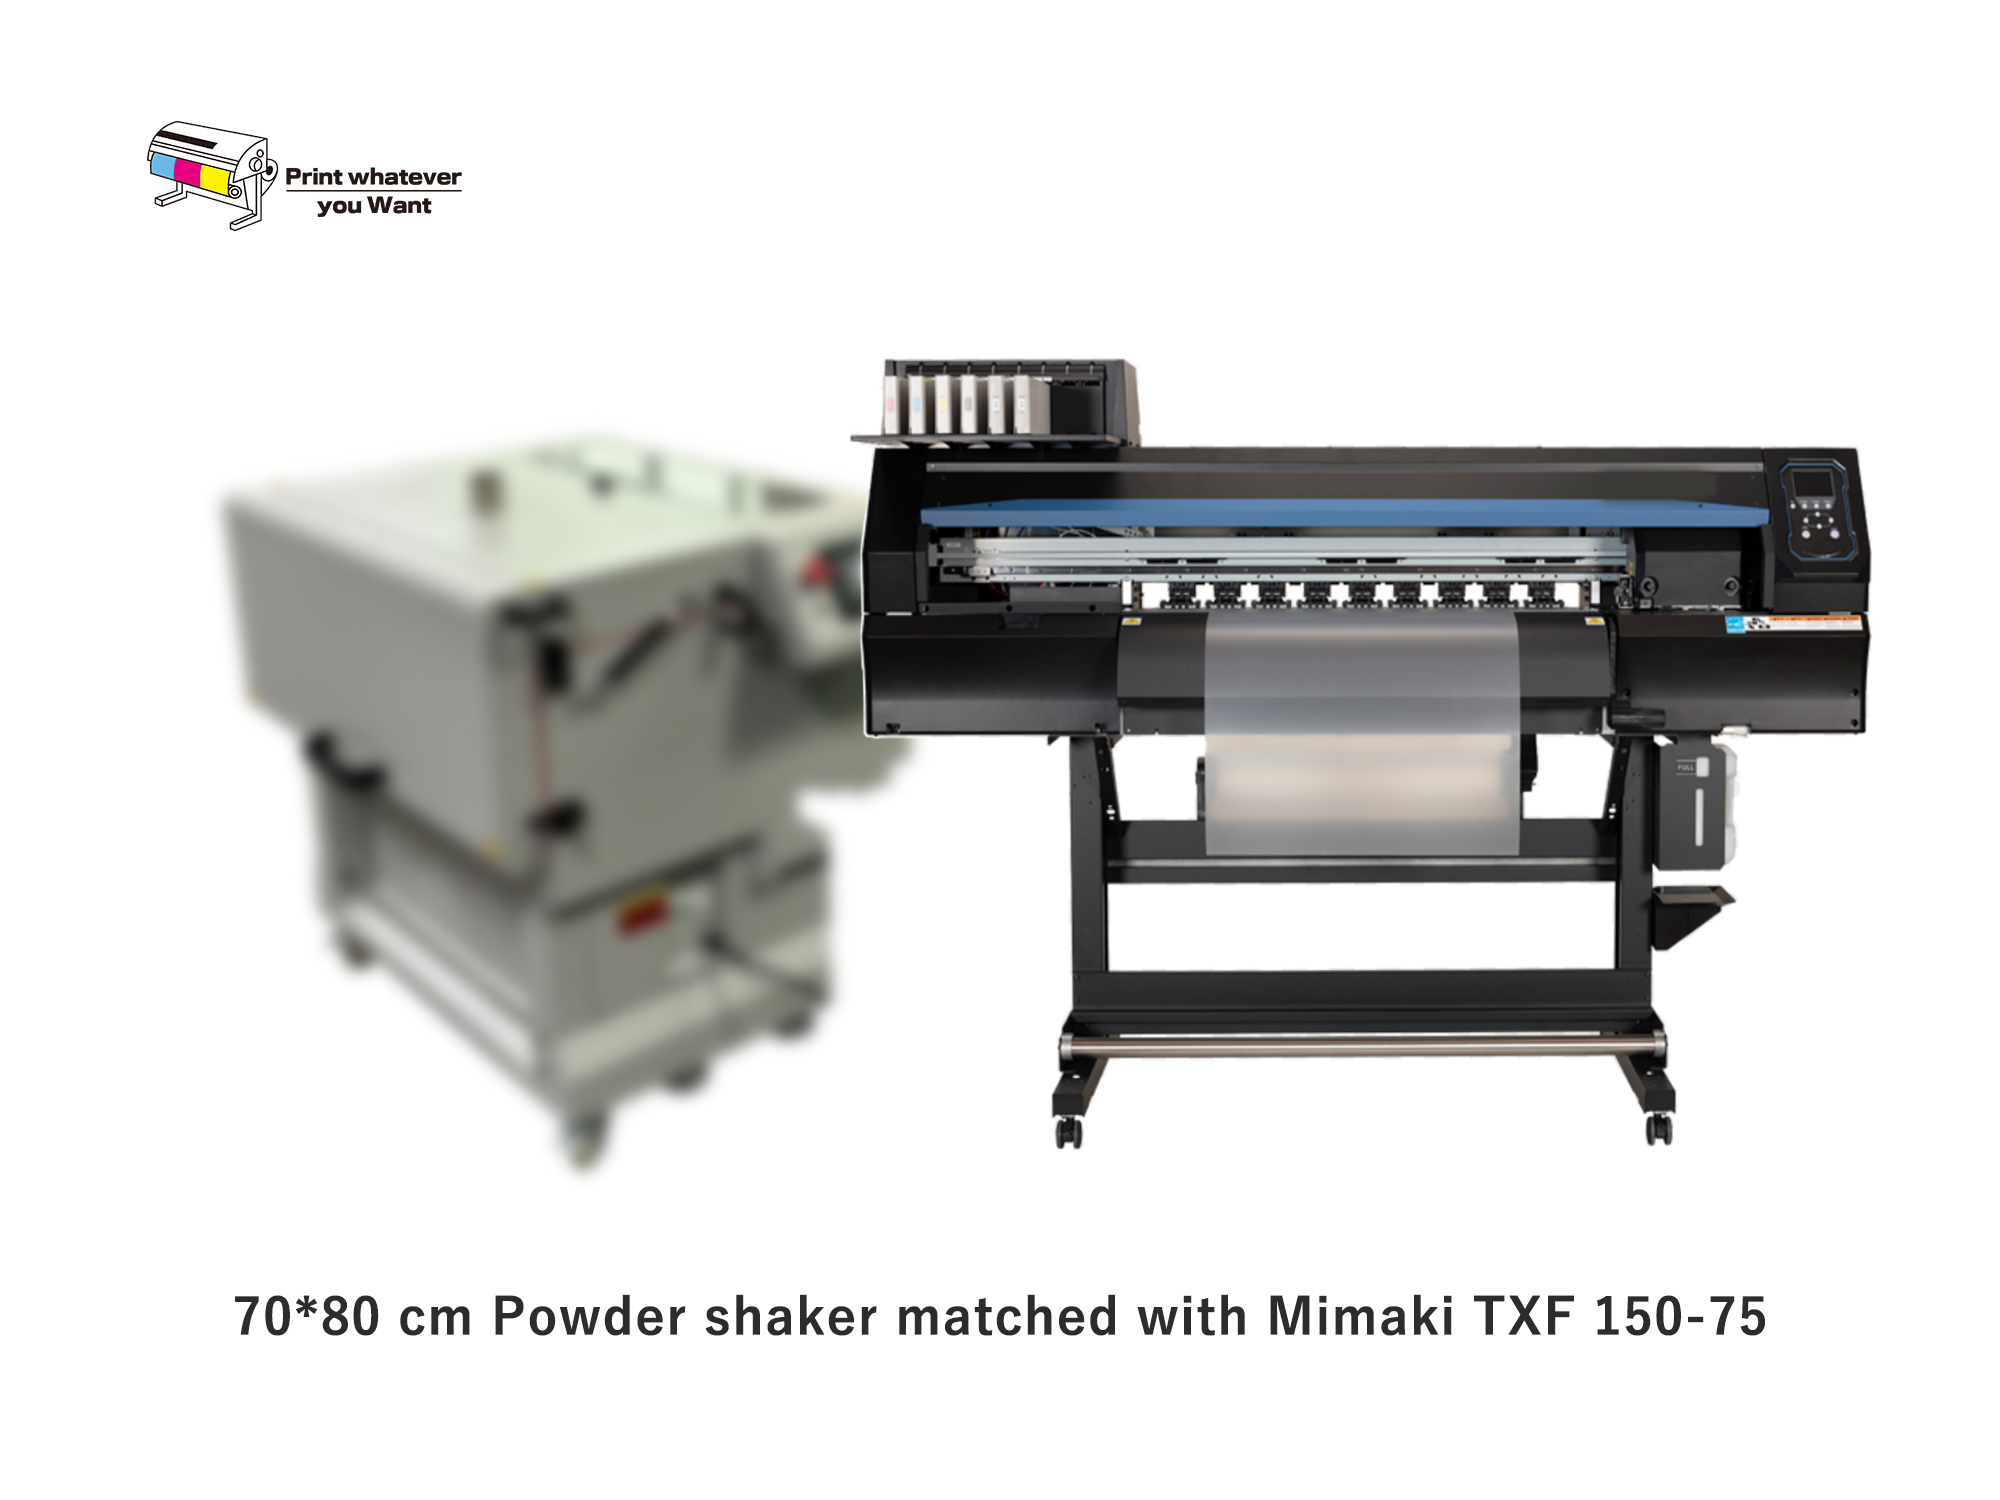 PrintWant neu kommender Pulverschüttler passend zu Mimaki TXF 150-75